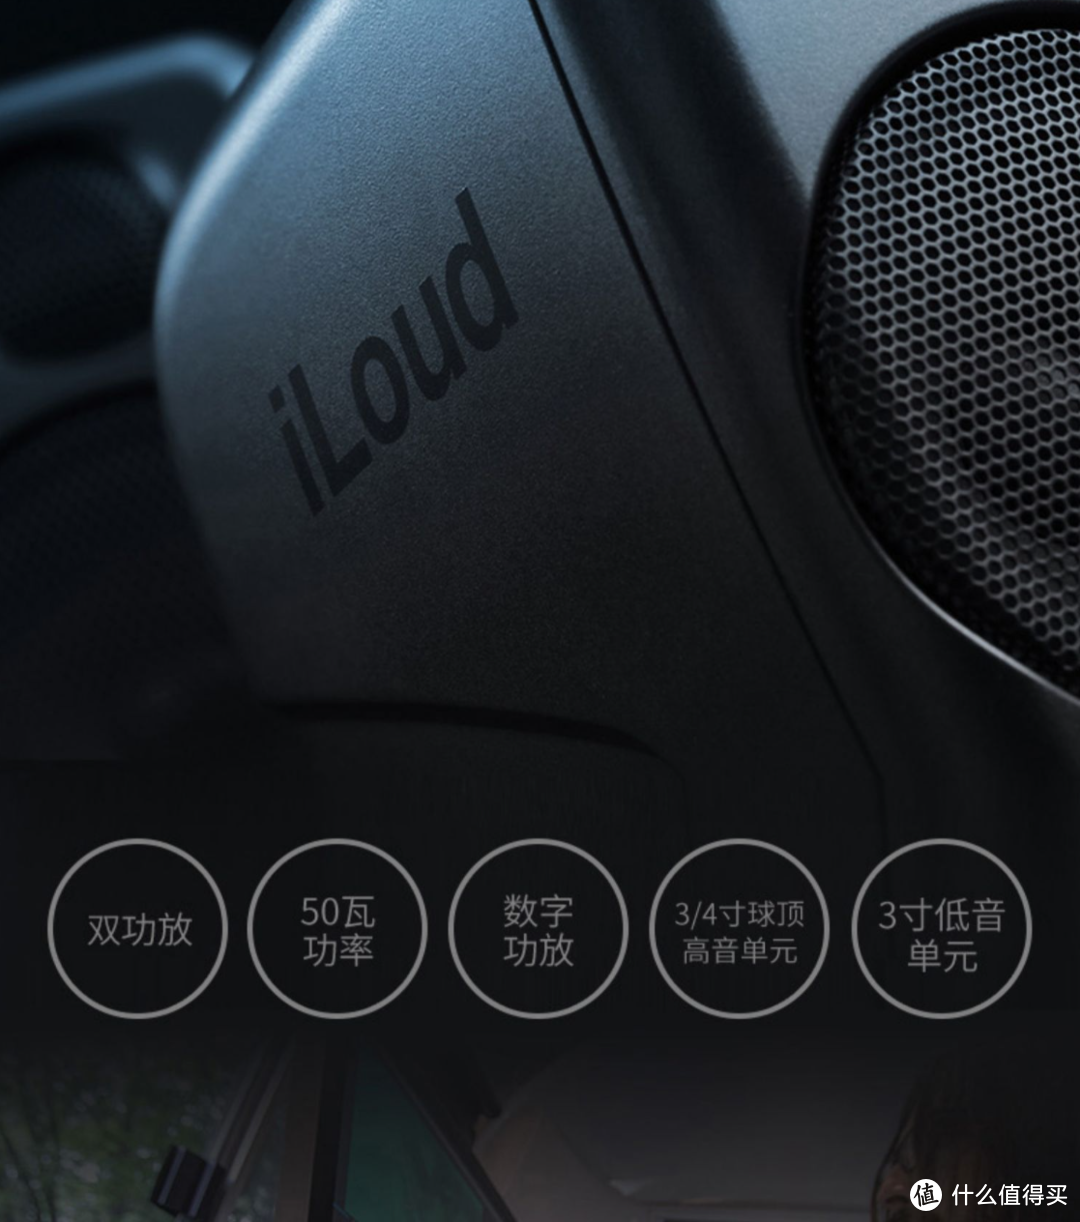 黑5值得买的数码产品：iLoud MM，最小的监听音箱